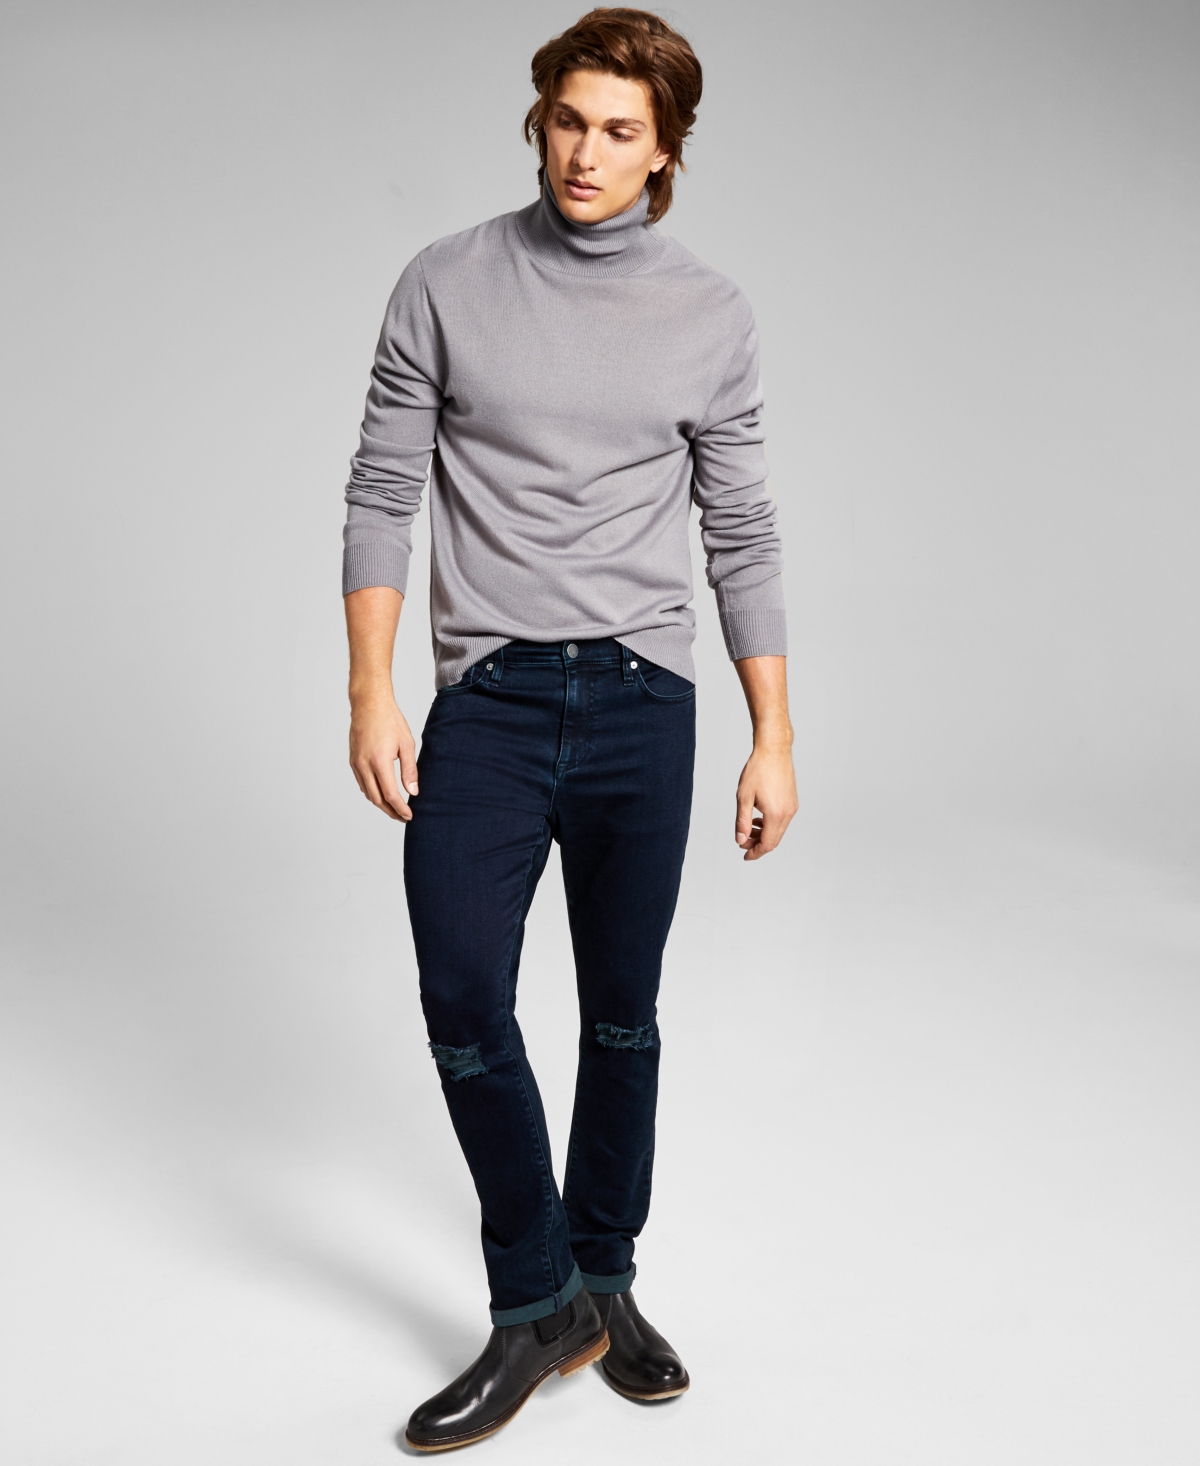 Men's Solid Turtleneck Sweater - Grey